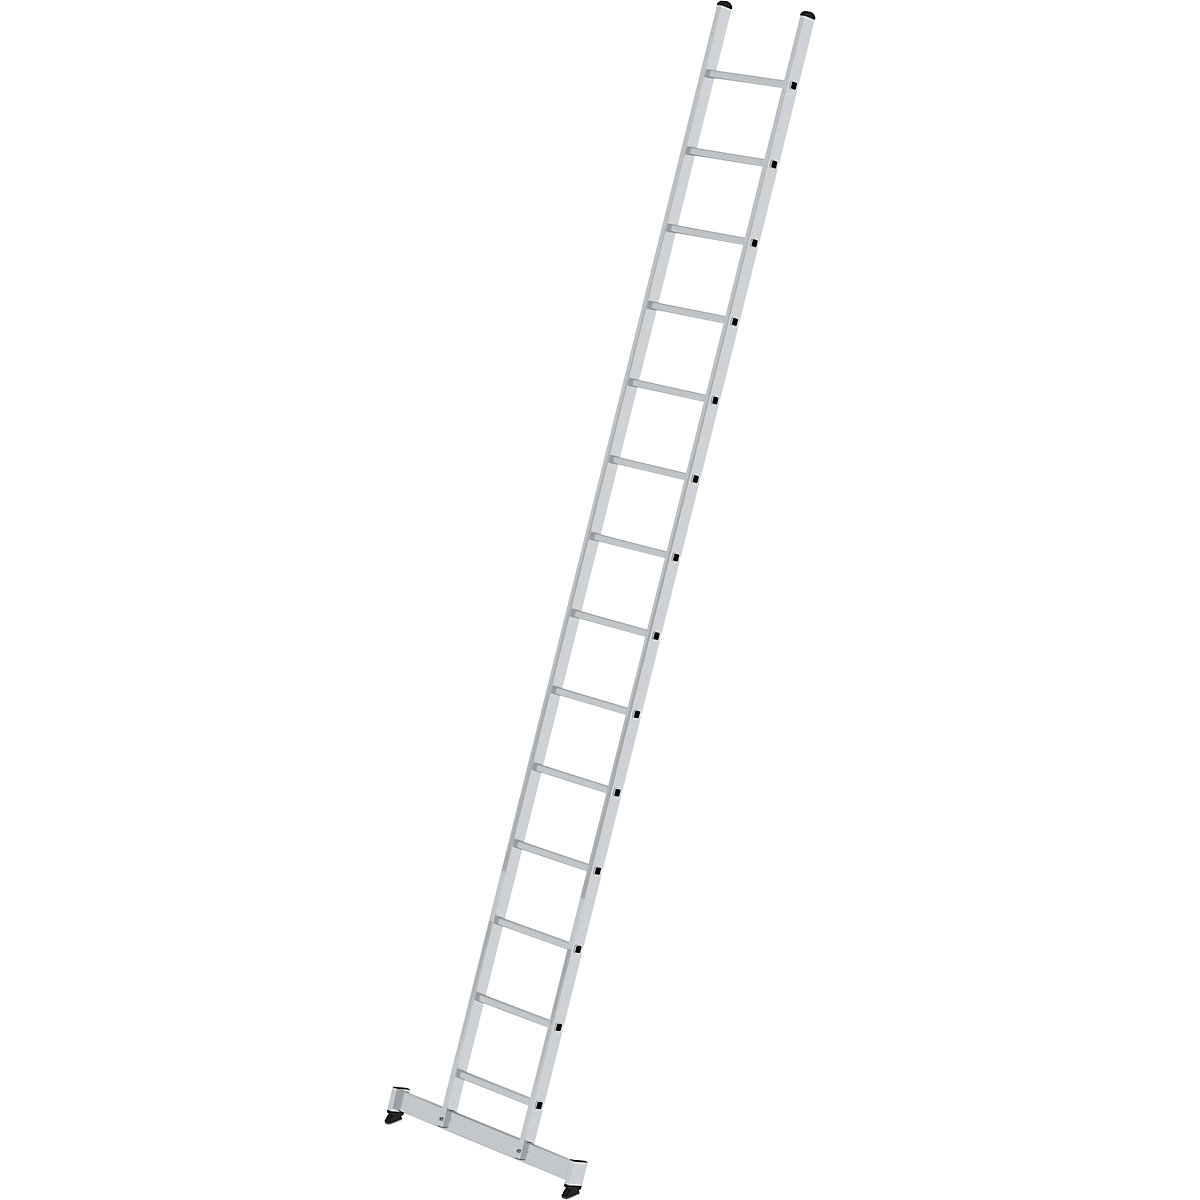 Príložný rebrík s priečkami – MUNK, profesionálne vyhotovenie, šírka 420 mm, 14 priečok, s priečnikom nivello®-10